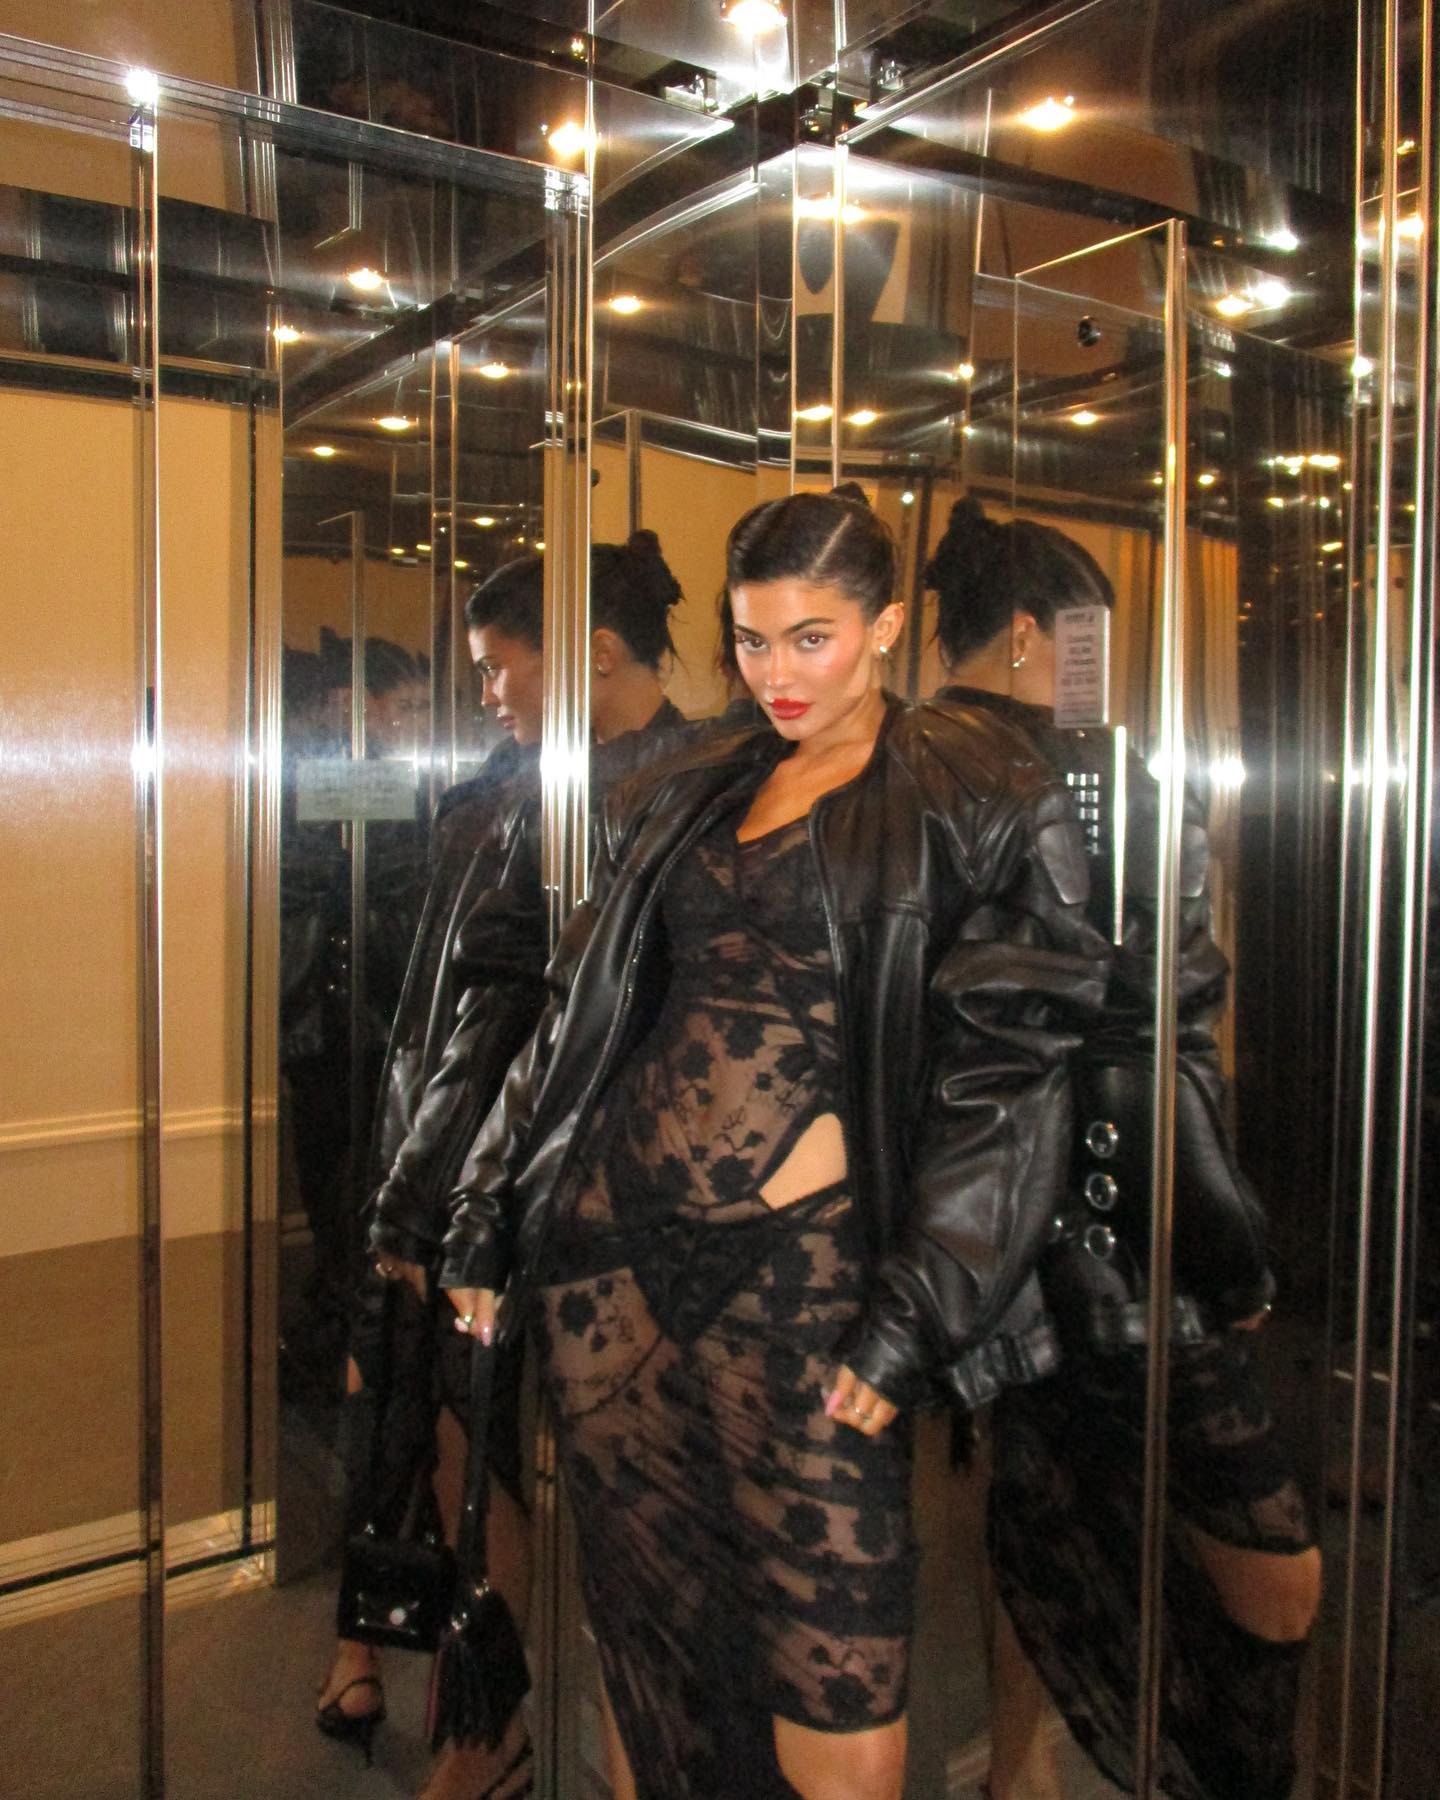 Kylie Jenner and Kim Kardashian Twincest For Instagram! - Photo 61